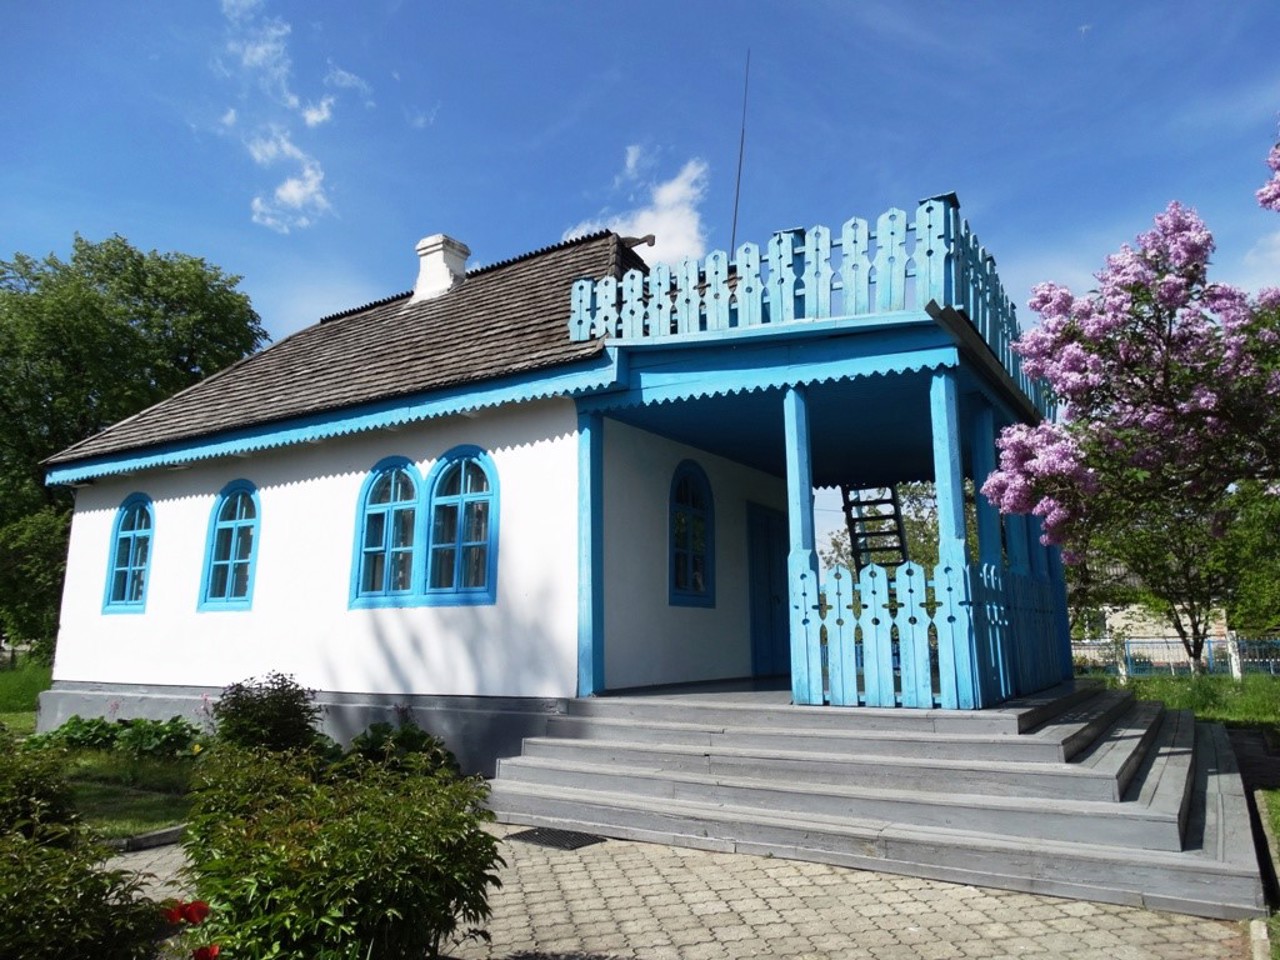 Kolodiazhne village